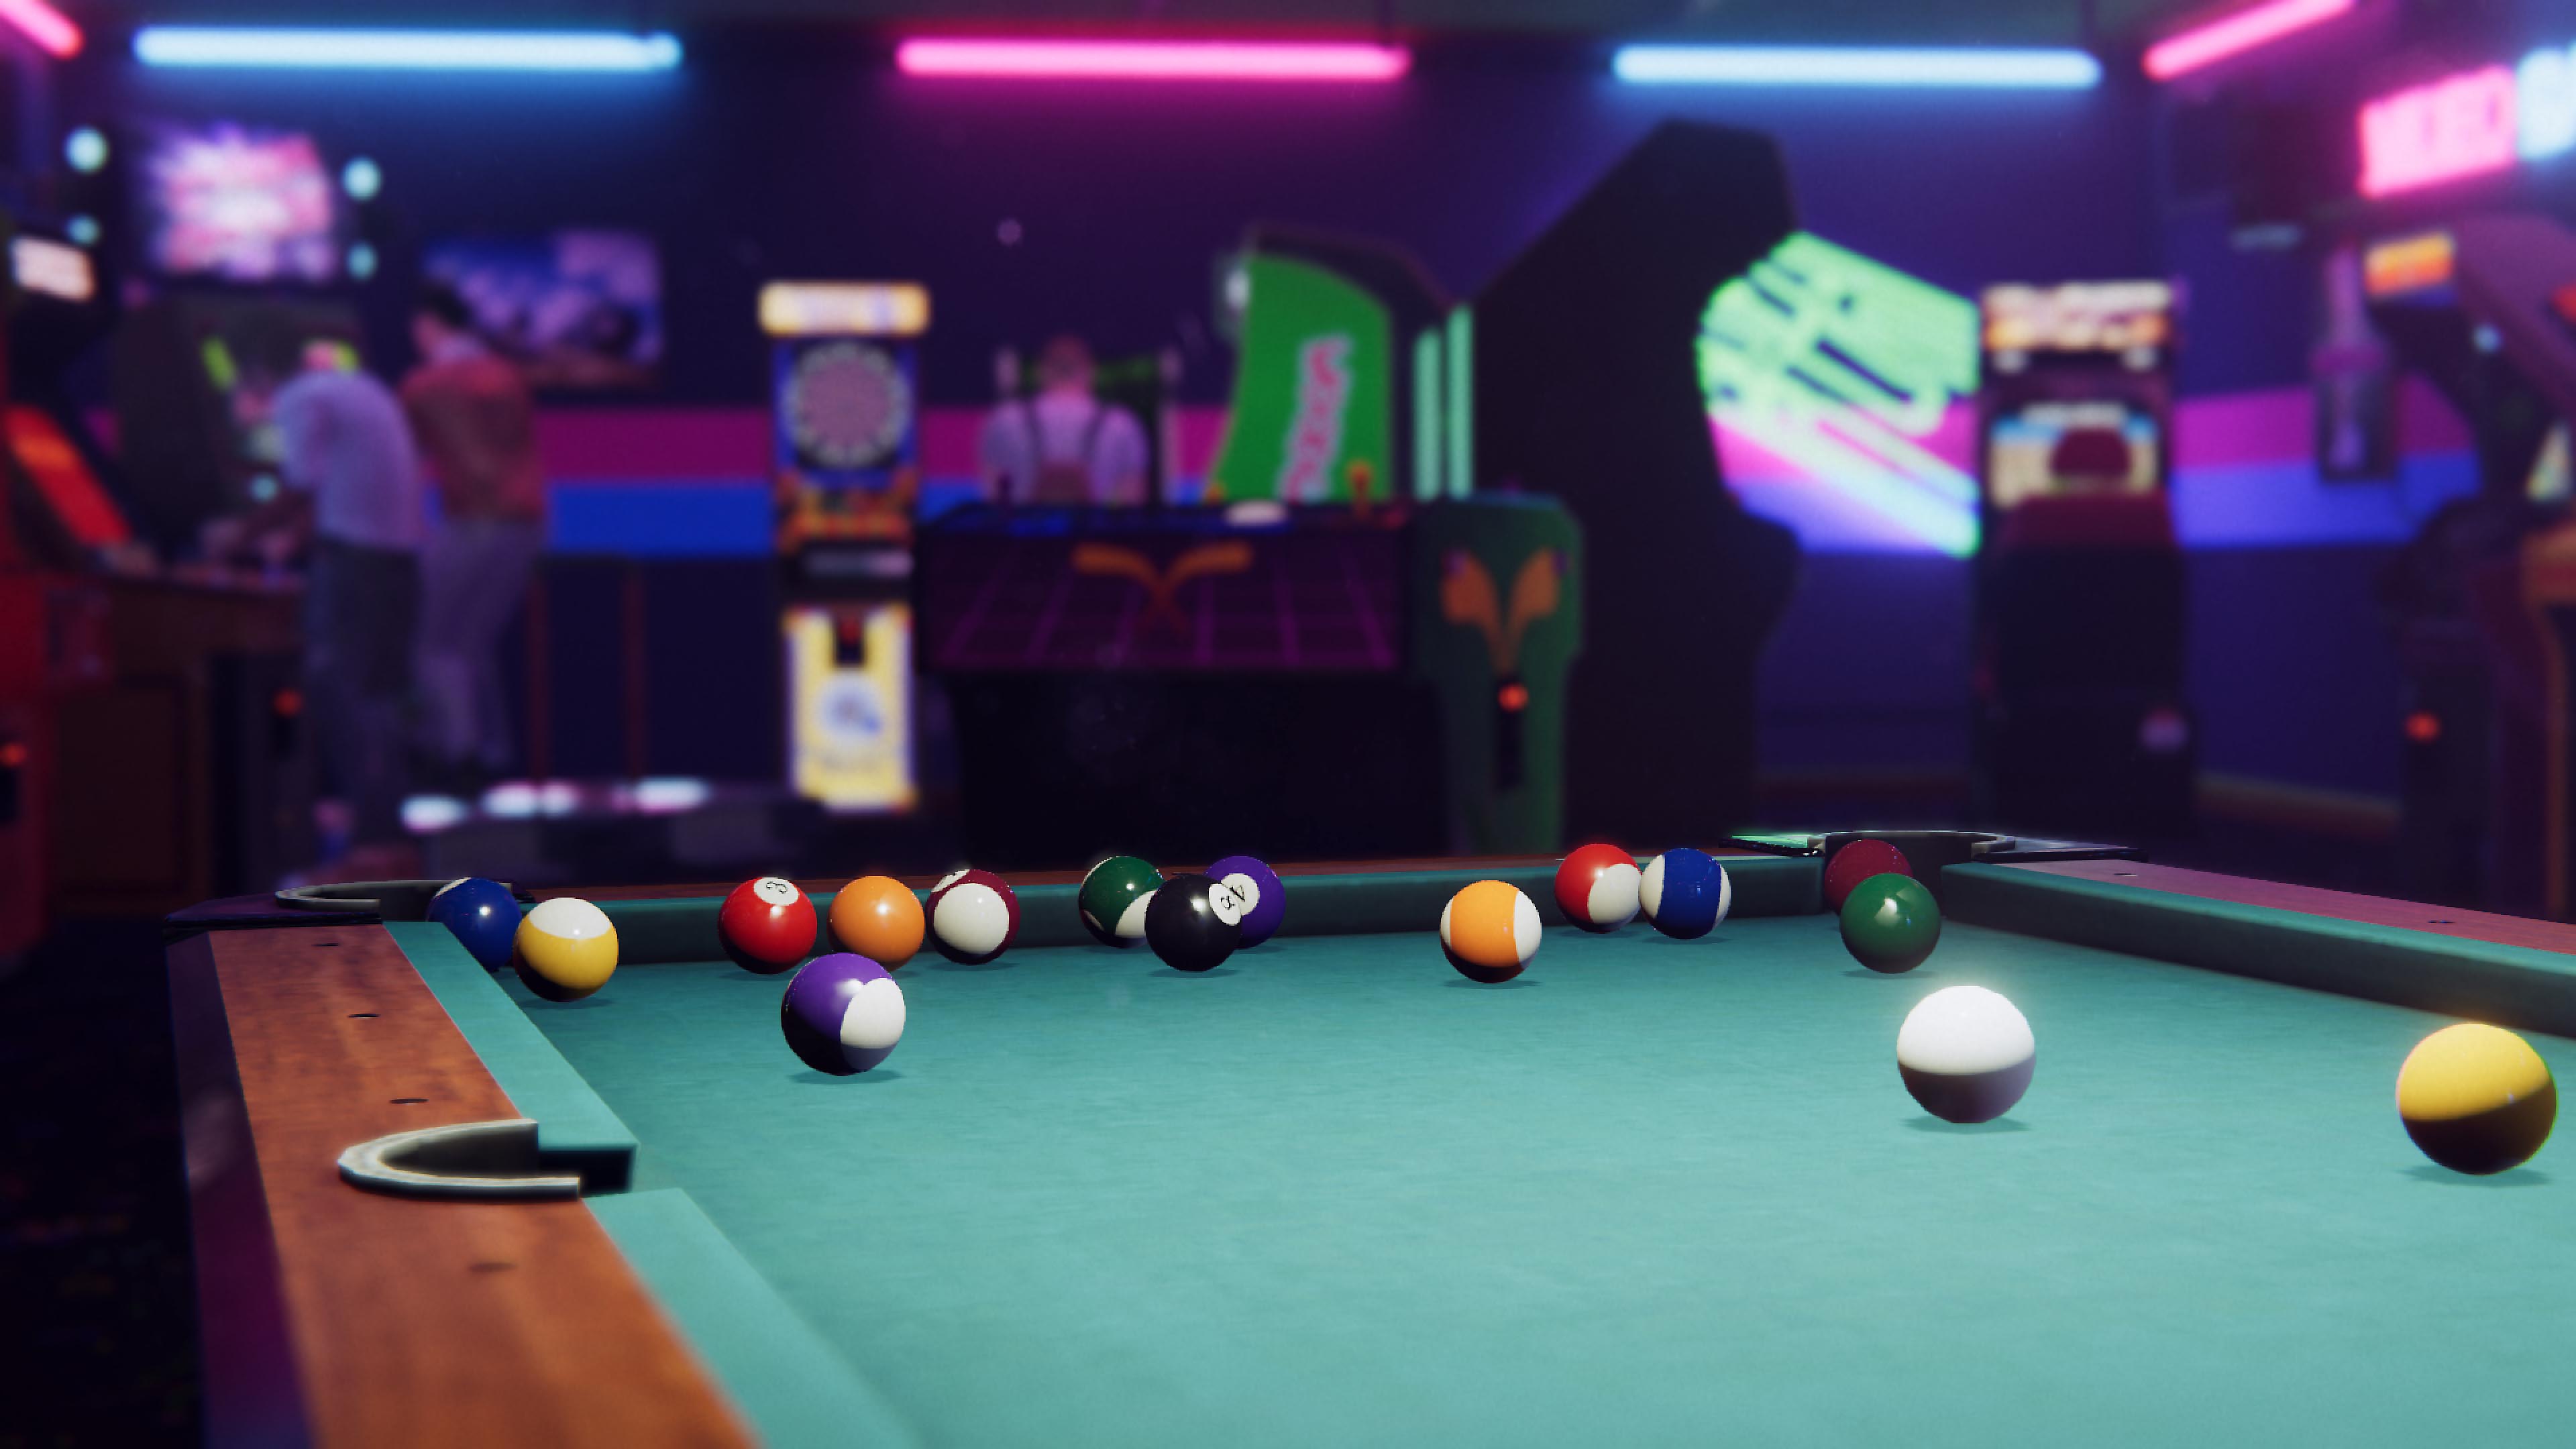 Arcade Paradise-skærmbillede, der viser et pool-bord